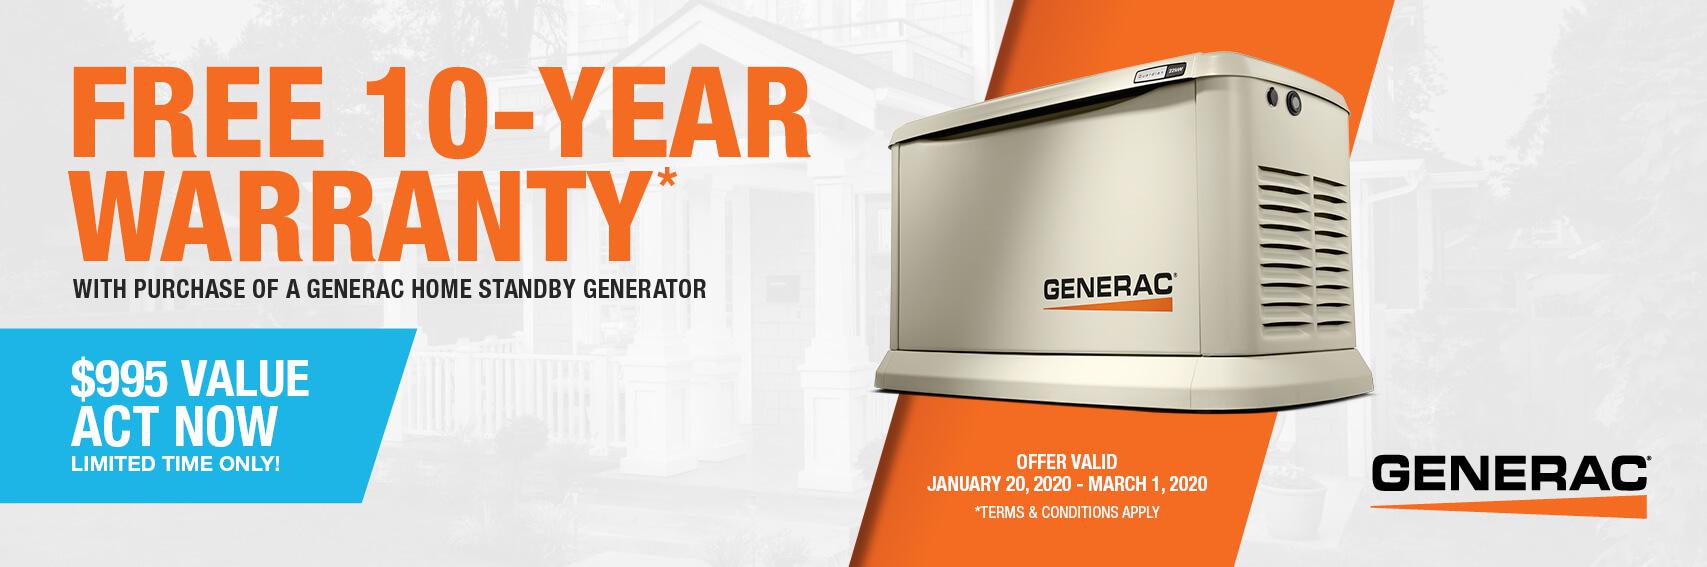 Homestandby Generator Deal | Warranty Offer | Generac Dealer | Washington, PA